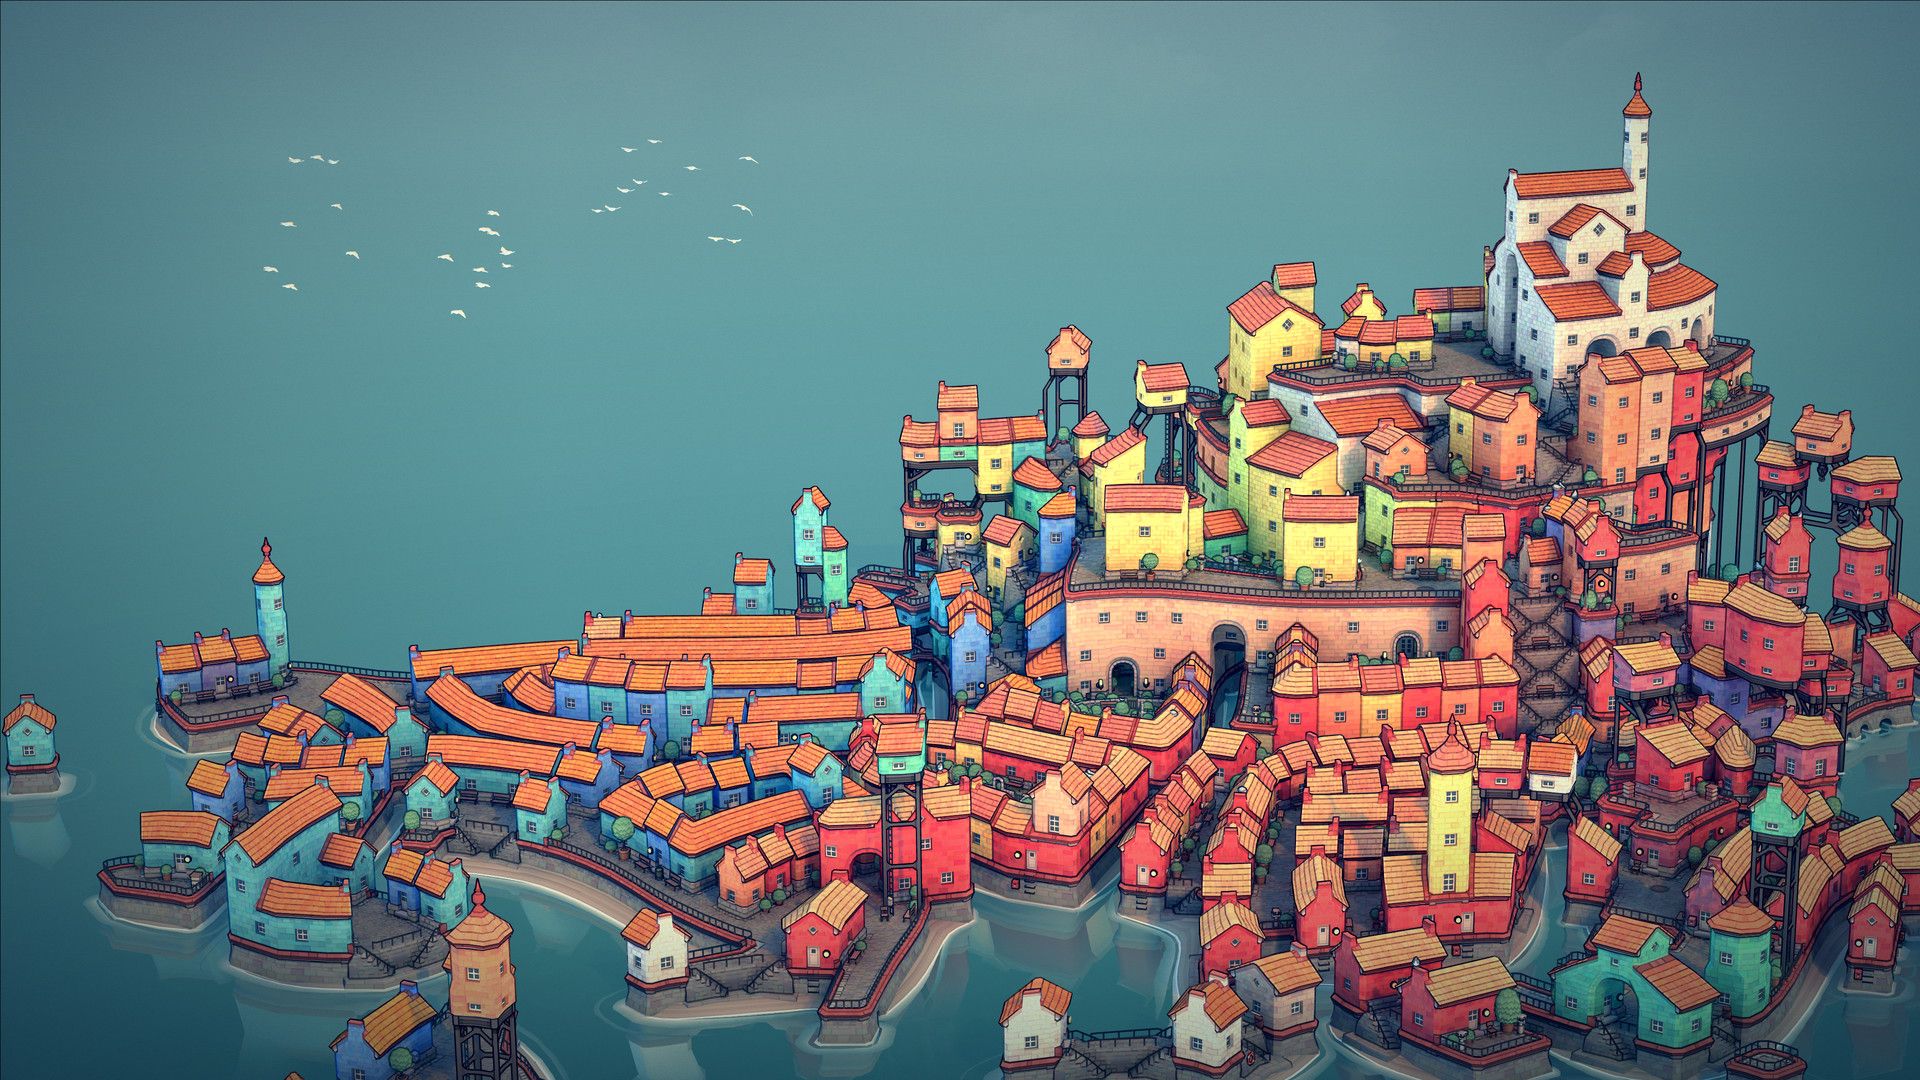 Townscaper + Dorfromantik - Jogos de construção de cidades como você nunca  viu antes! #GV Review